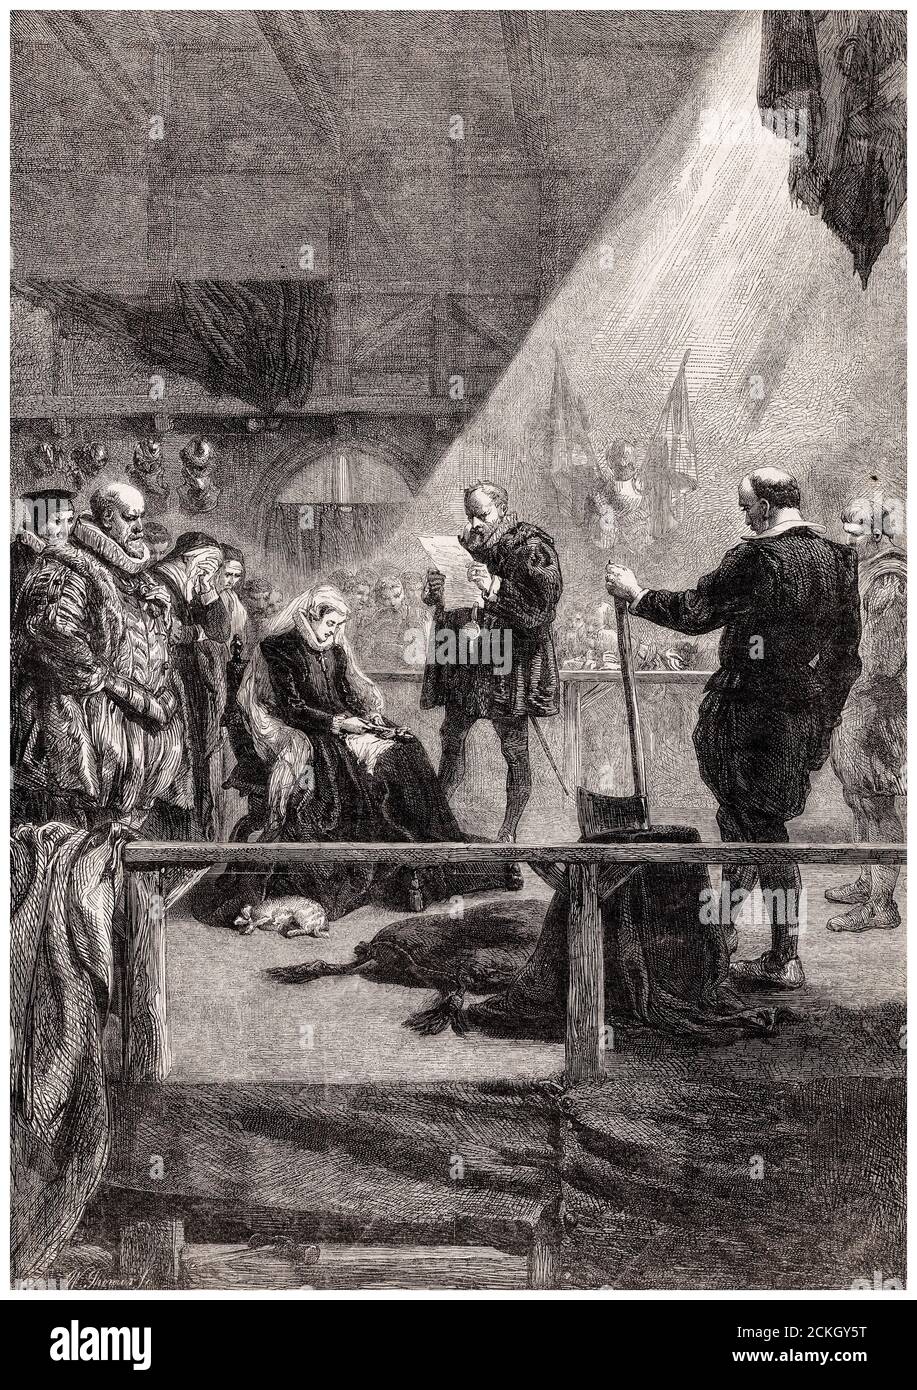 Hinrichtung von Mary Queen of Scots (1542-1587), am 8. Februar 1587 in der Großen Halle von Fotheringhay Castle, Northamptonshire, England, Stich von William Luson Thomas nach Sir John Gilbert, 1861 Stockfoto